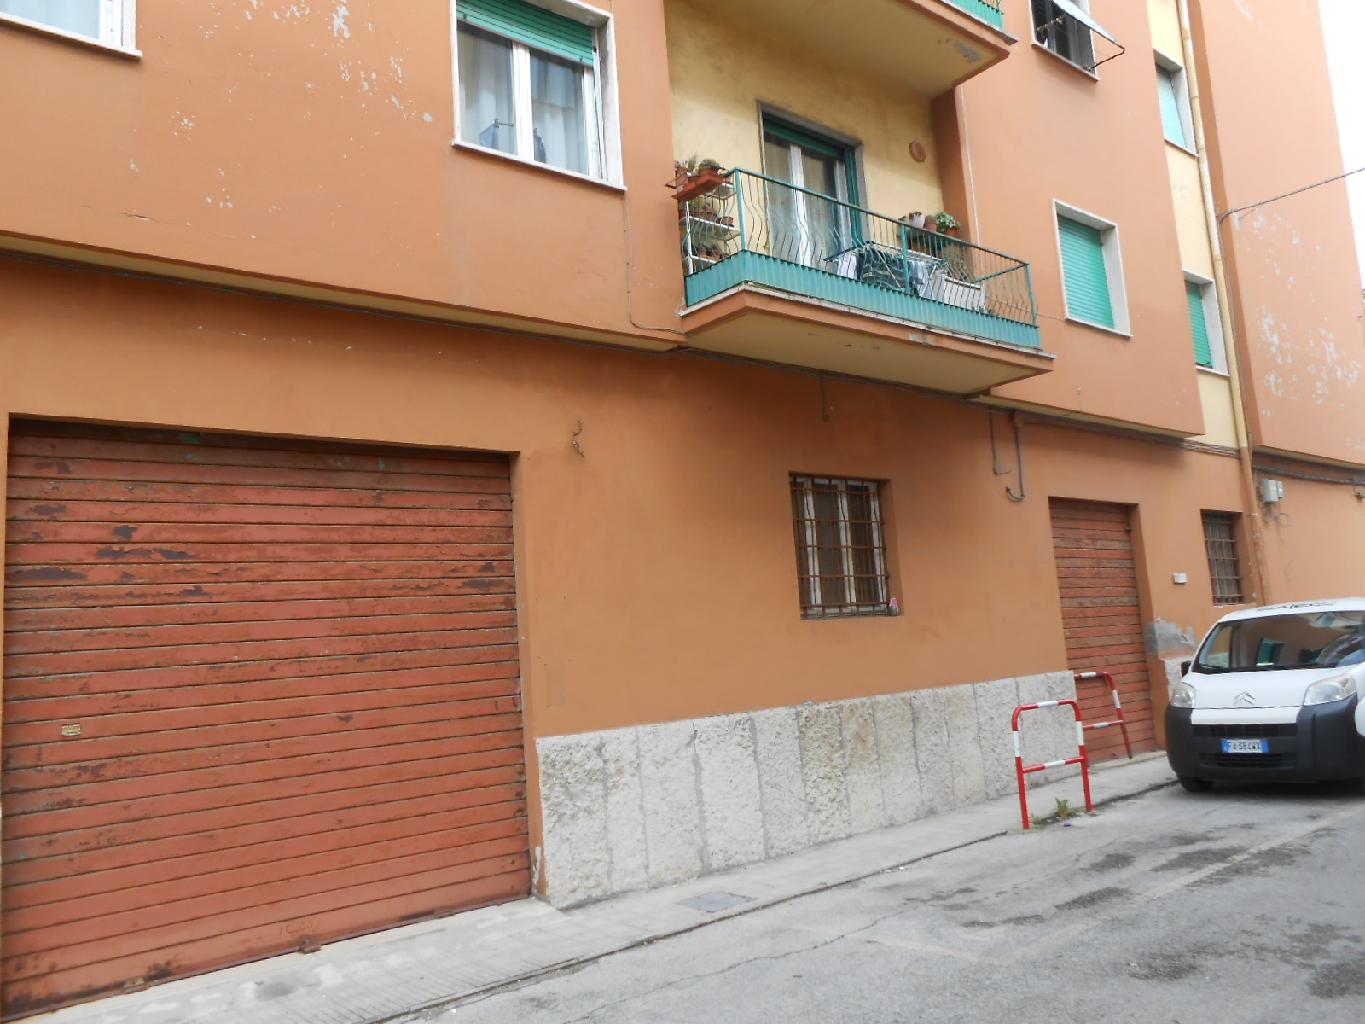 Locale commerciale in vendita in via lotto 26, Ancona